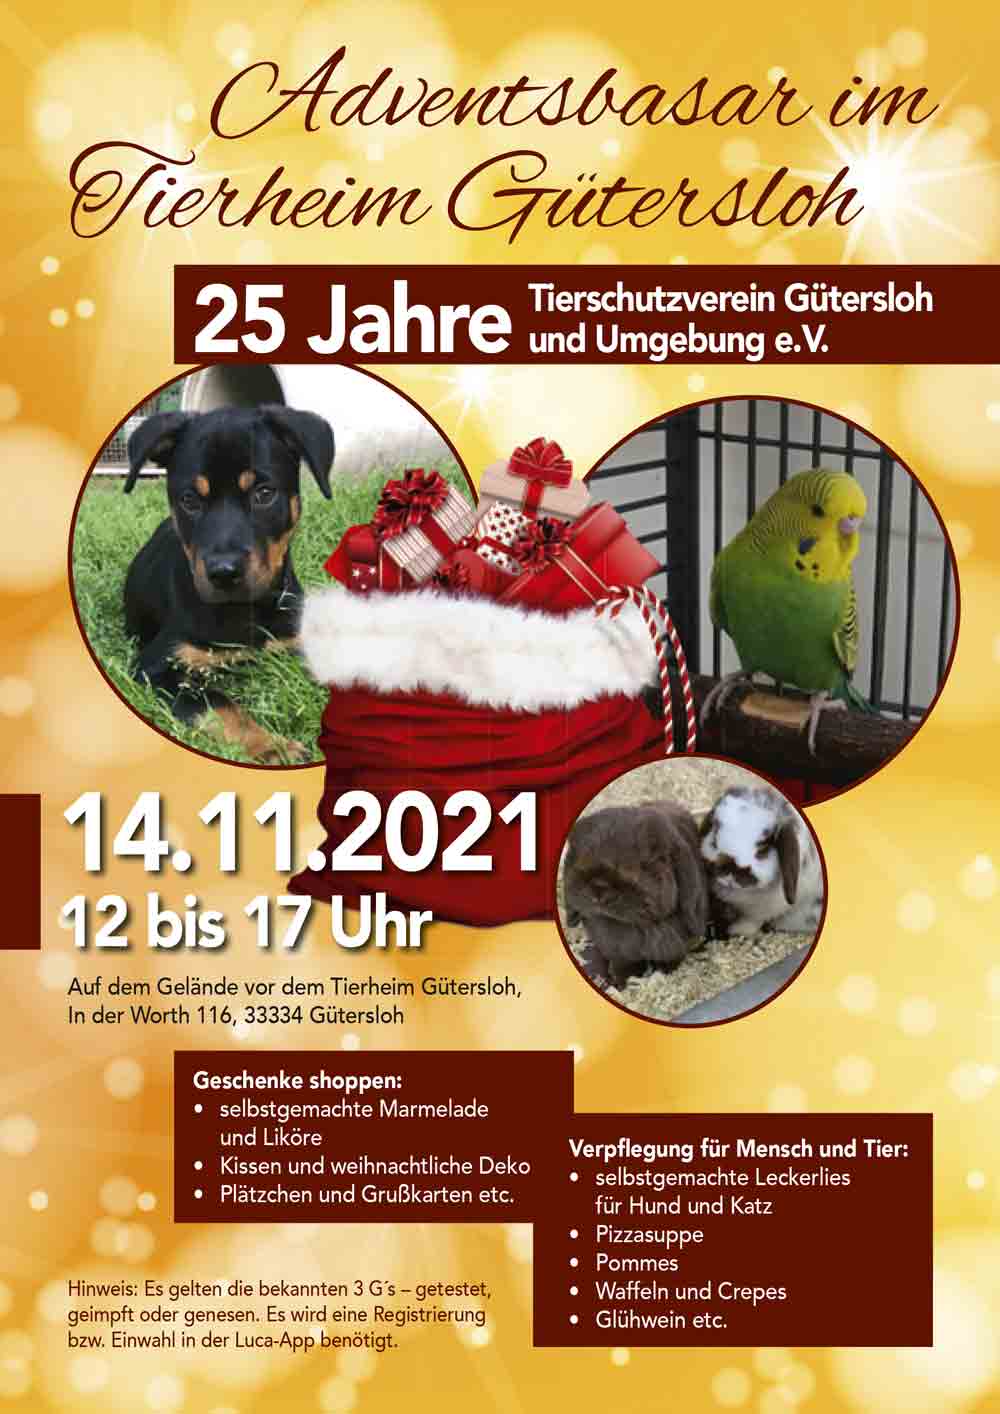 Adventsbasar im Tierheim Gütersloh am 14. November 2021 von 12 bis 17 Uhr